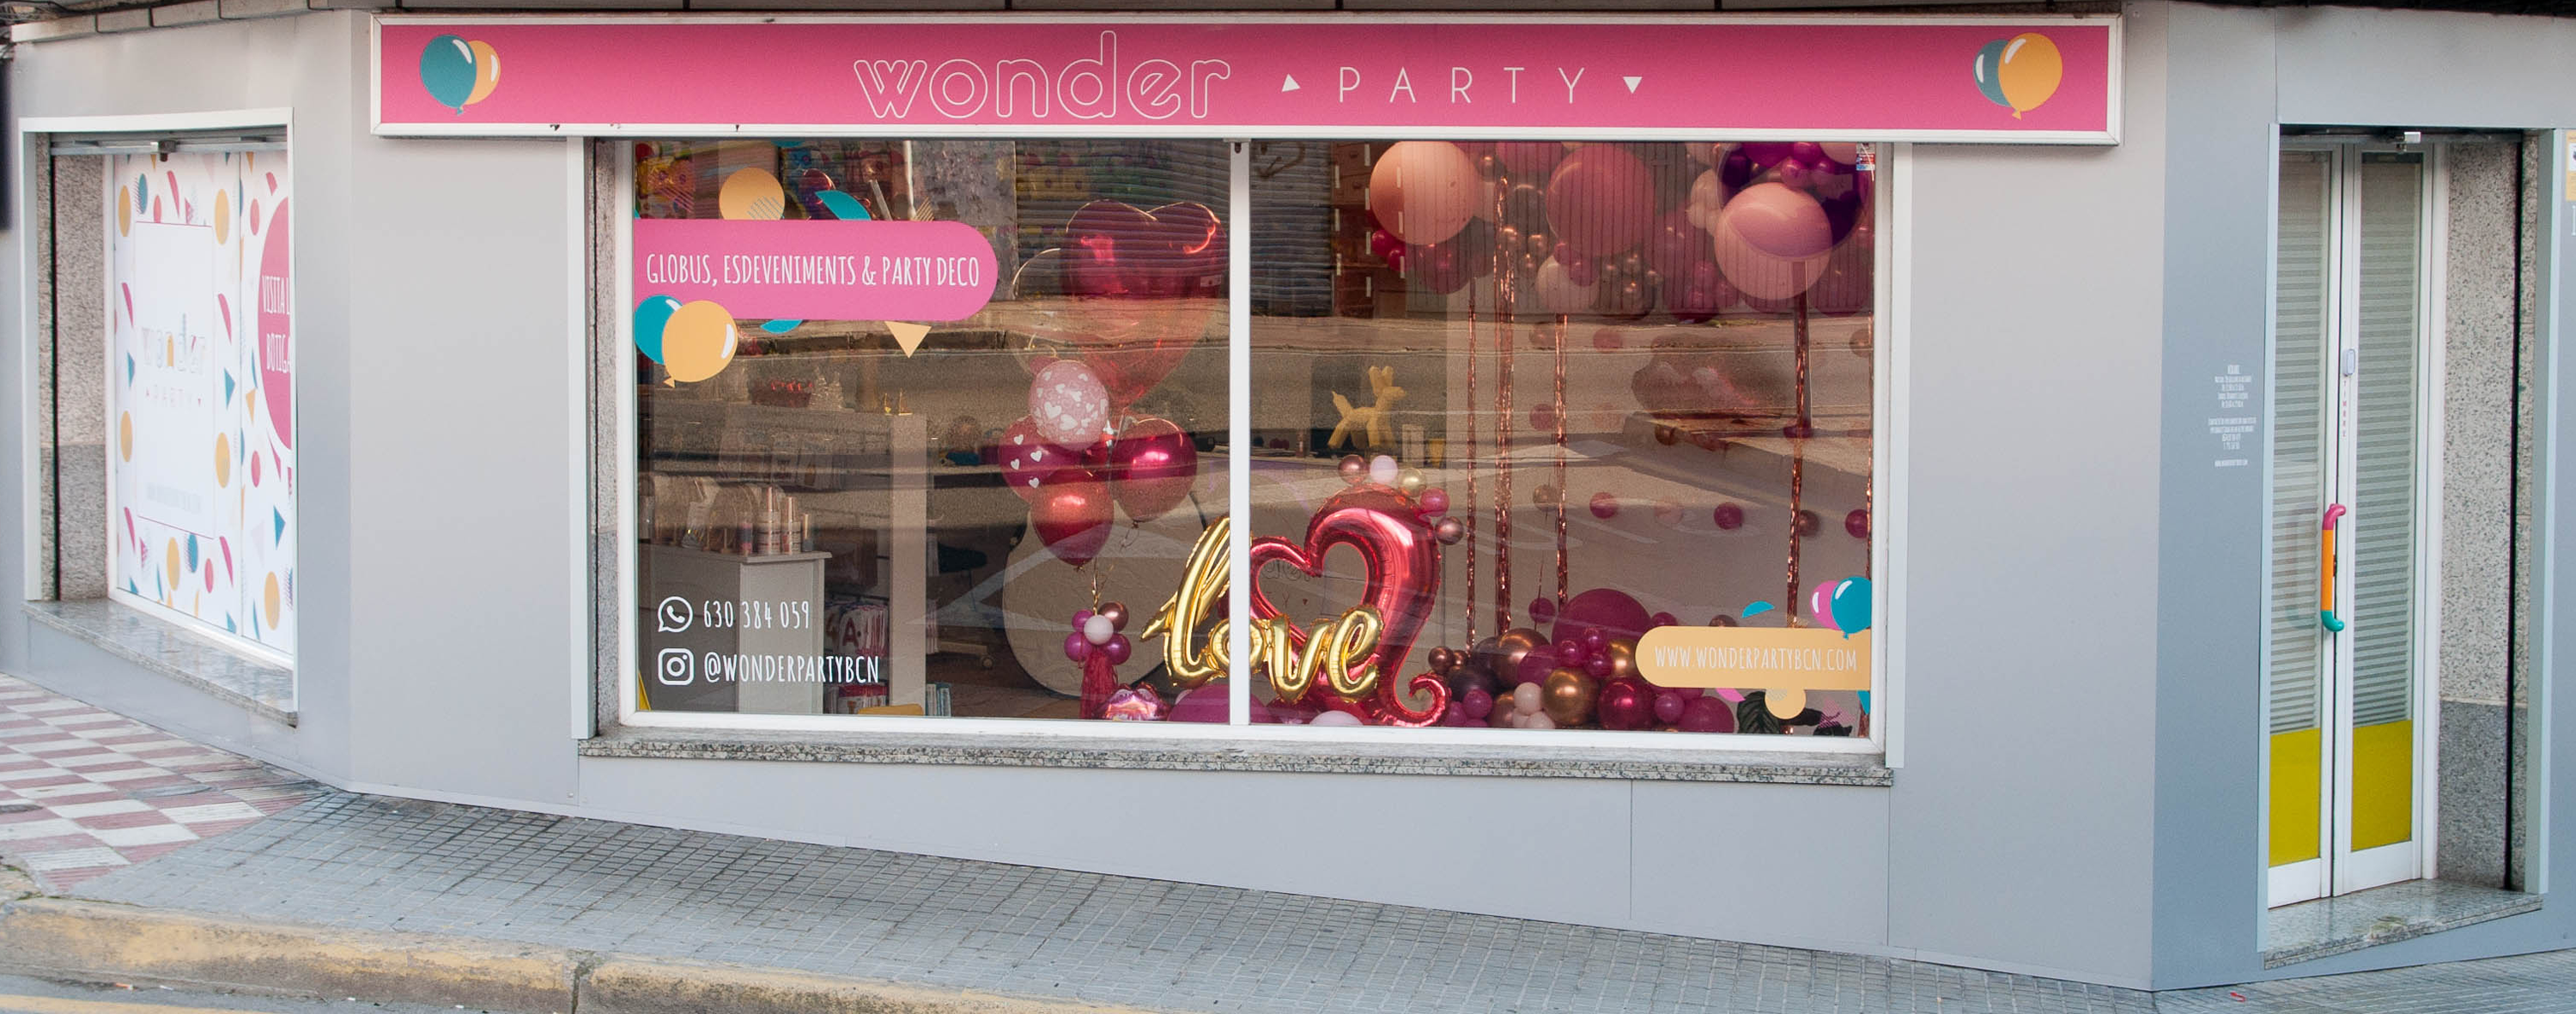 Wonder Party tienda Decoración con Globos